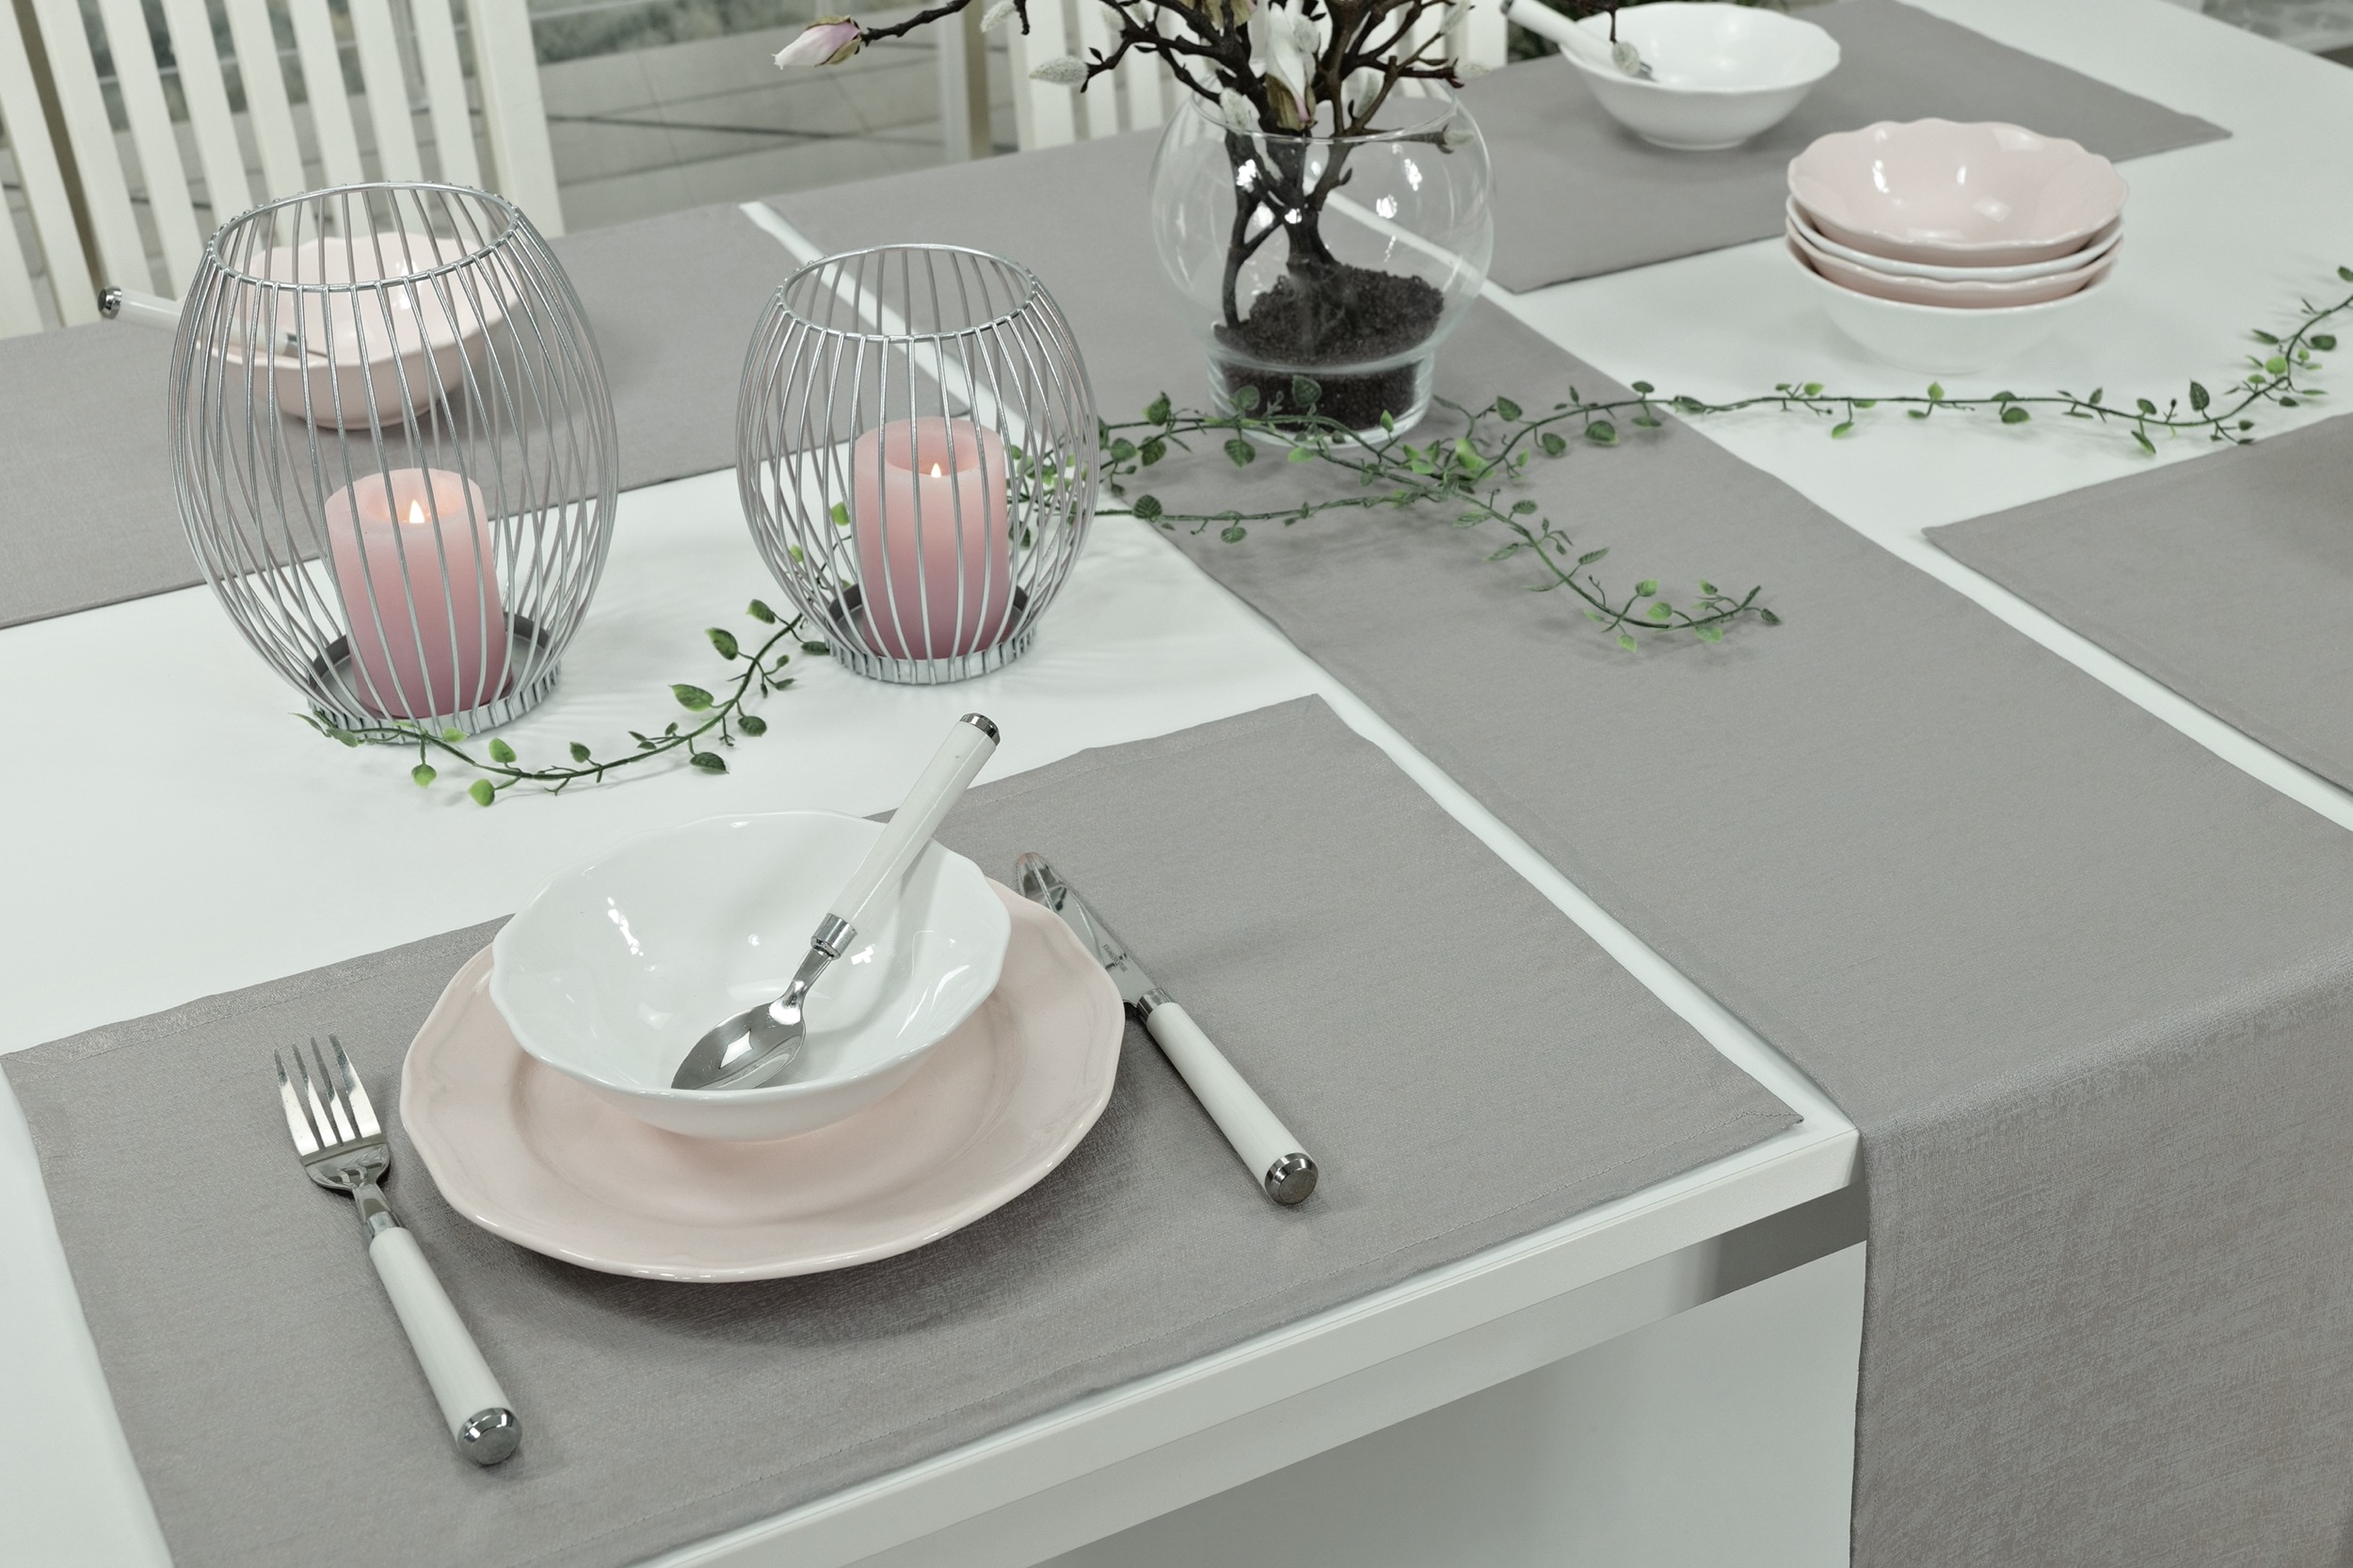 Abwaschbare Tischläufer Grau uni strukturiert Muriel Breite 30 cm